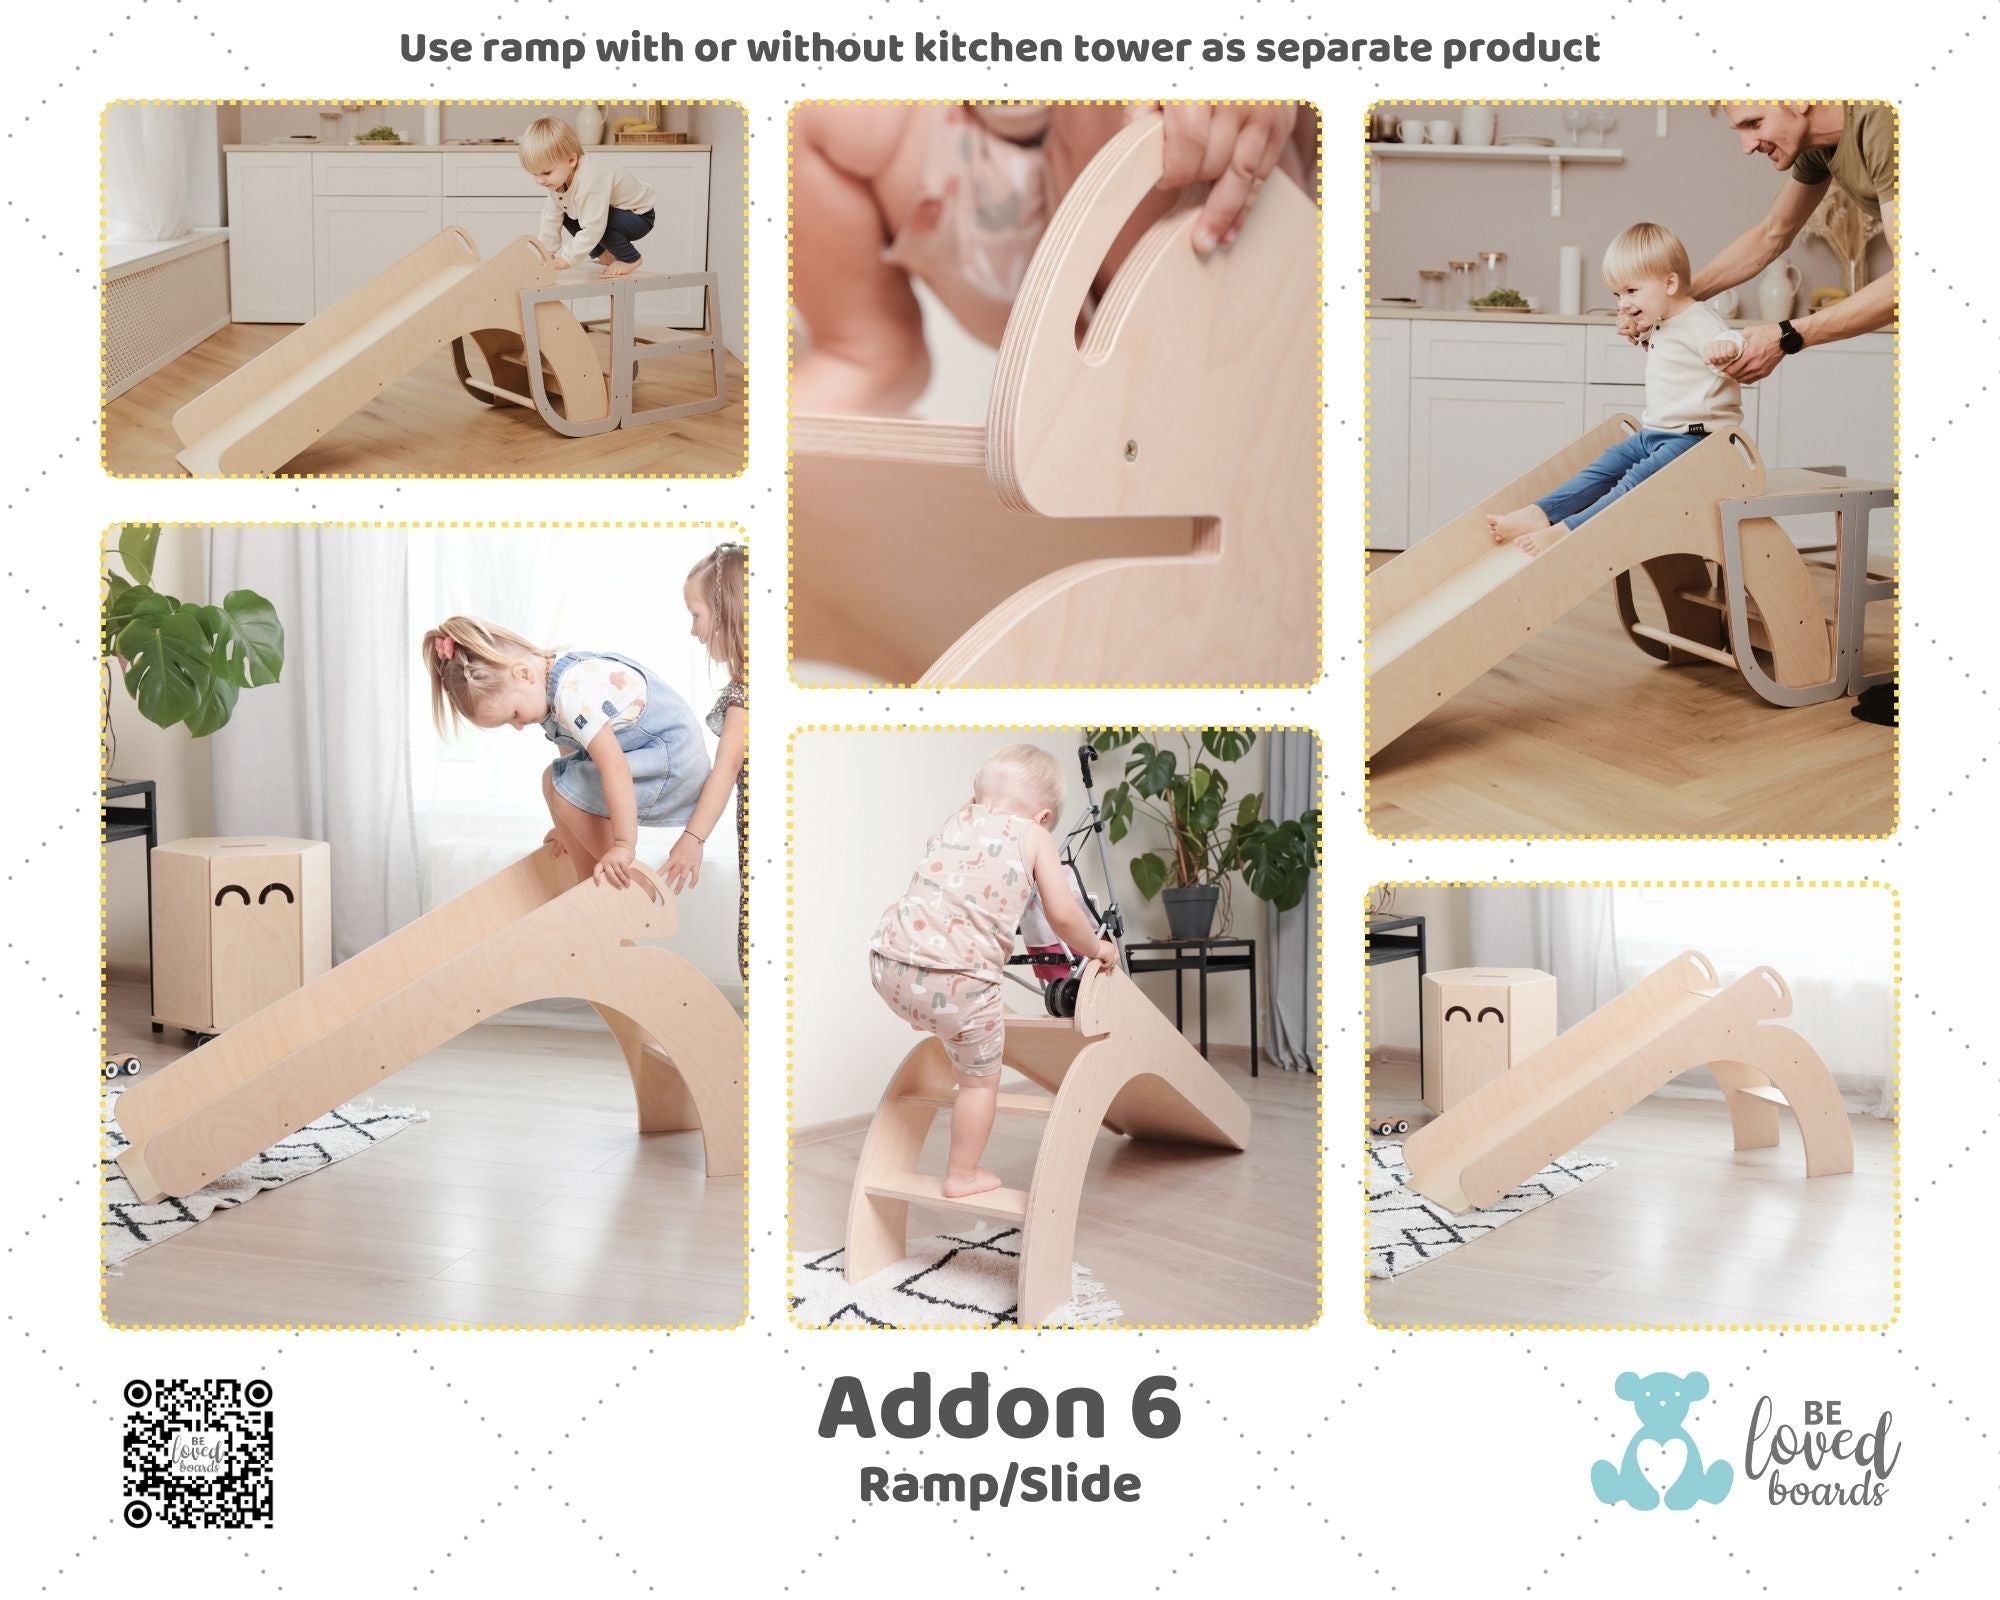 Addon6 - Ramp/Slide - Beloved boards